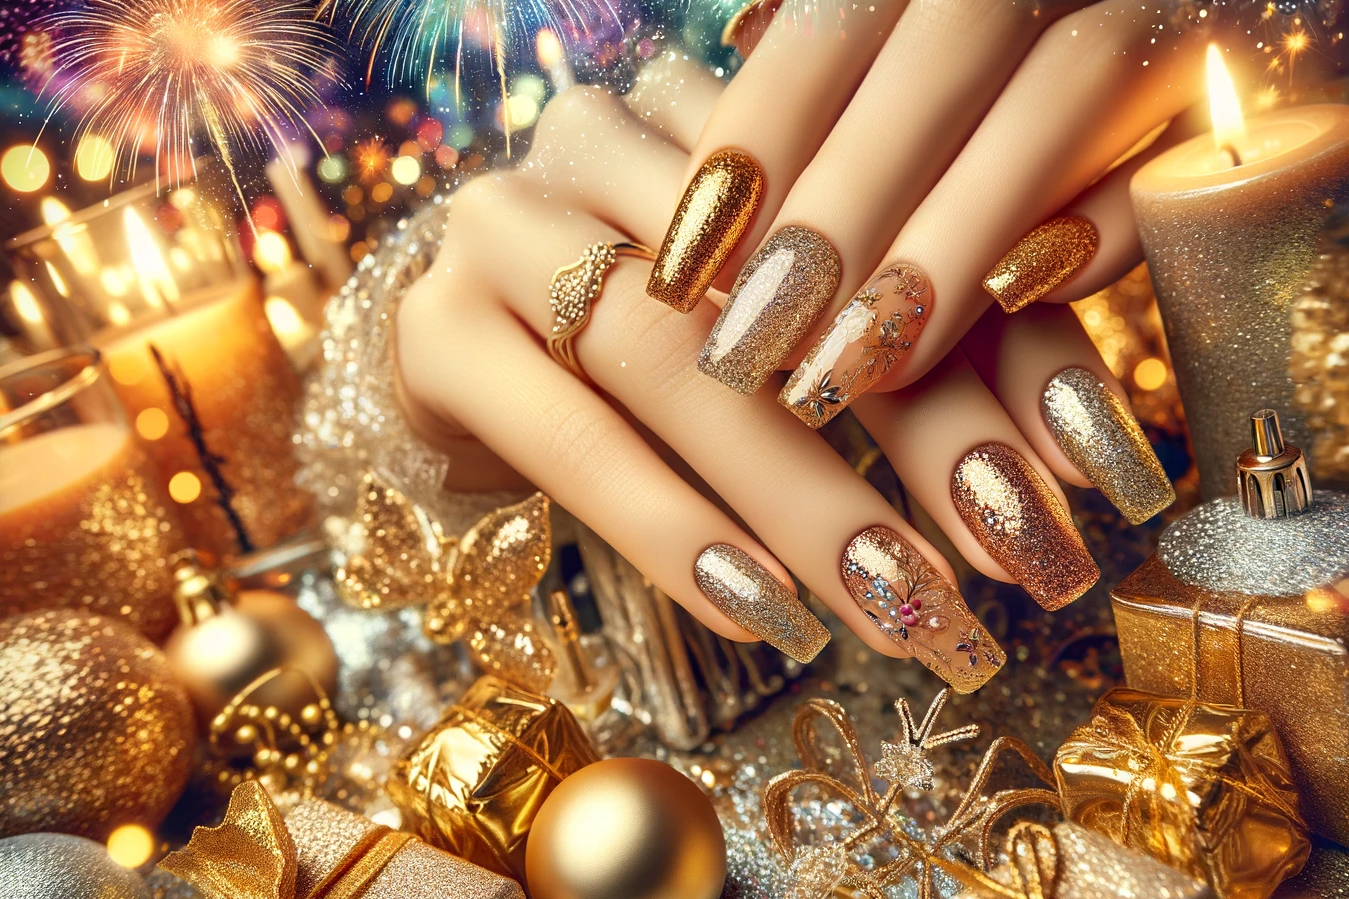 Sylwestrowe paznokcie w złotym kolorze z brokatem na tle bajkowej noworocznej sceny z migoczącymi światłami miasta, zegarem odliczający czas do Nowego Roku i świąteczną atmosferą